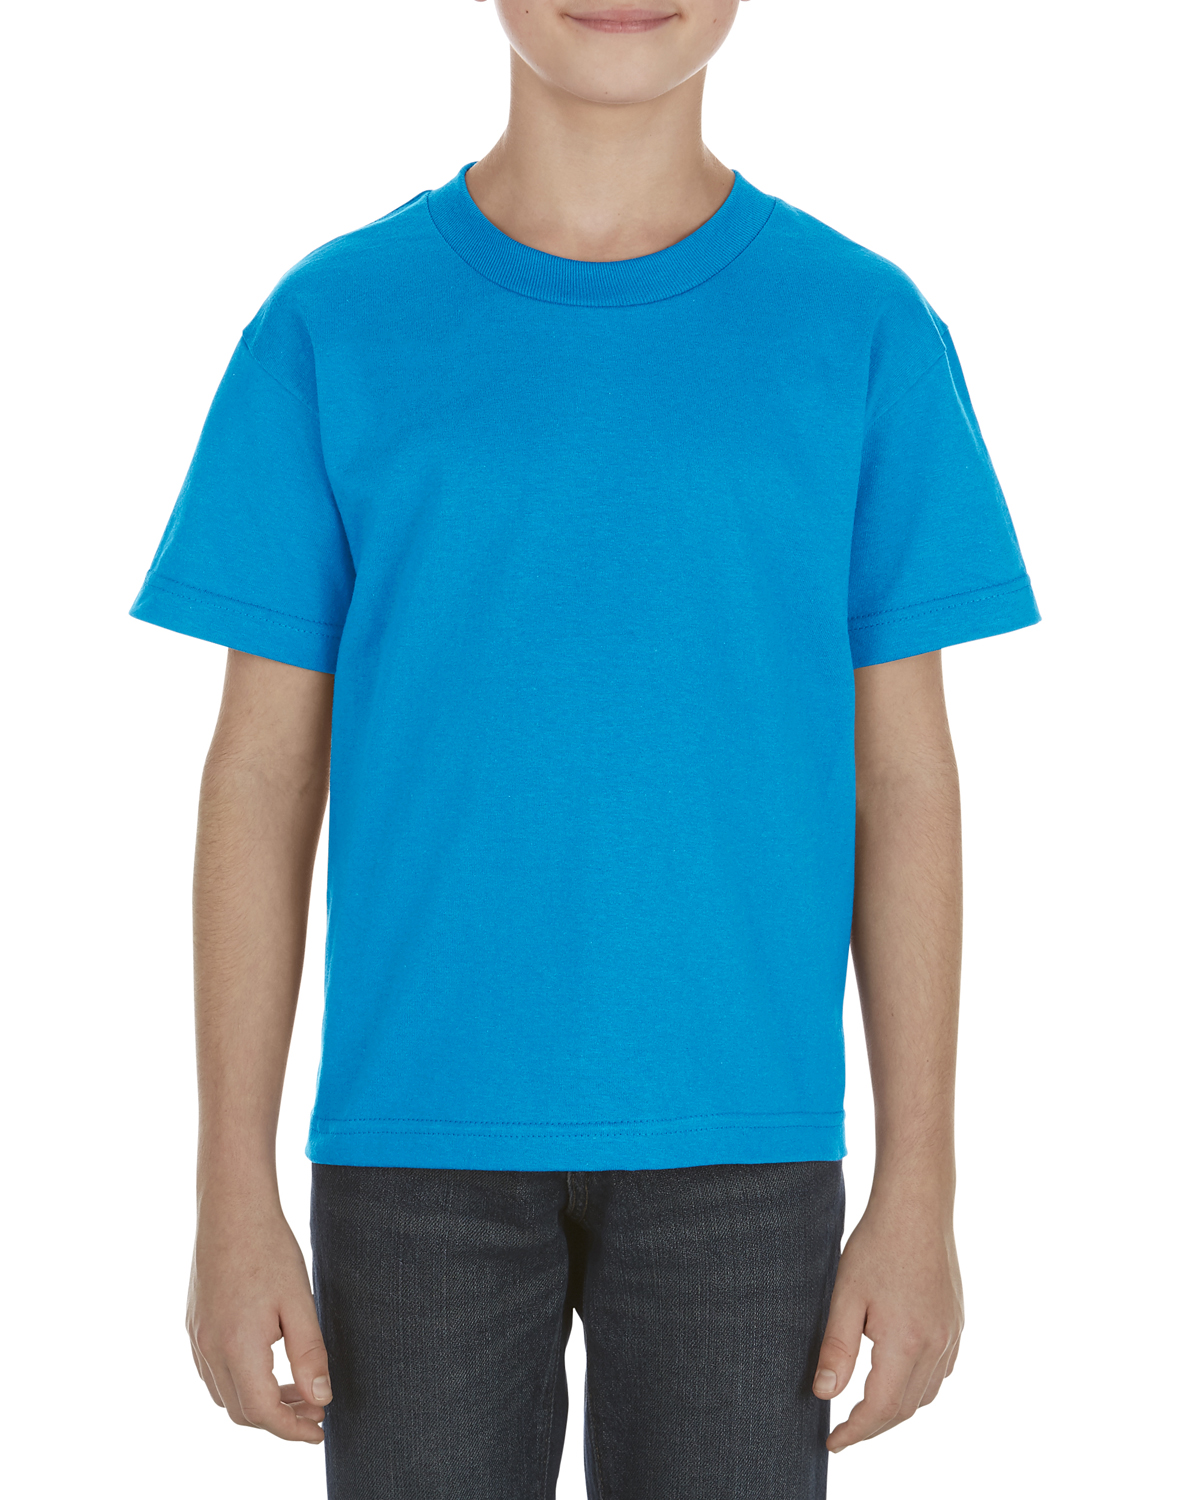 ALSTYLE Youth 6.0 oz., 100% Cotton T-Shirt - AL3381